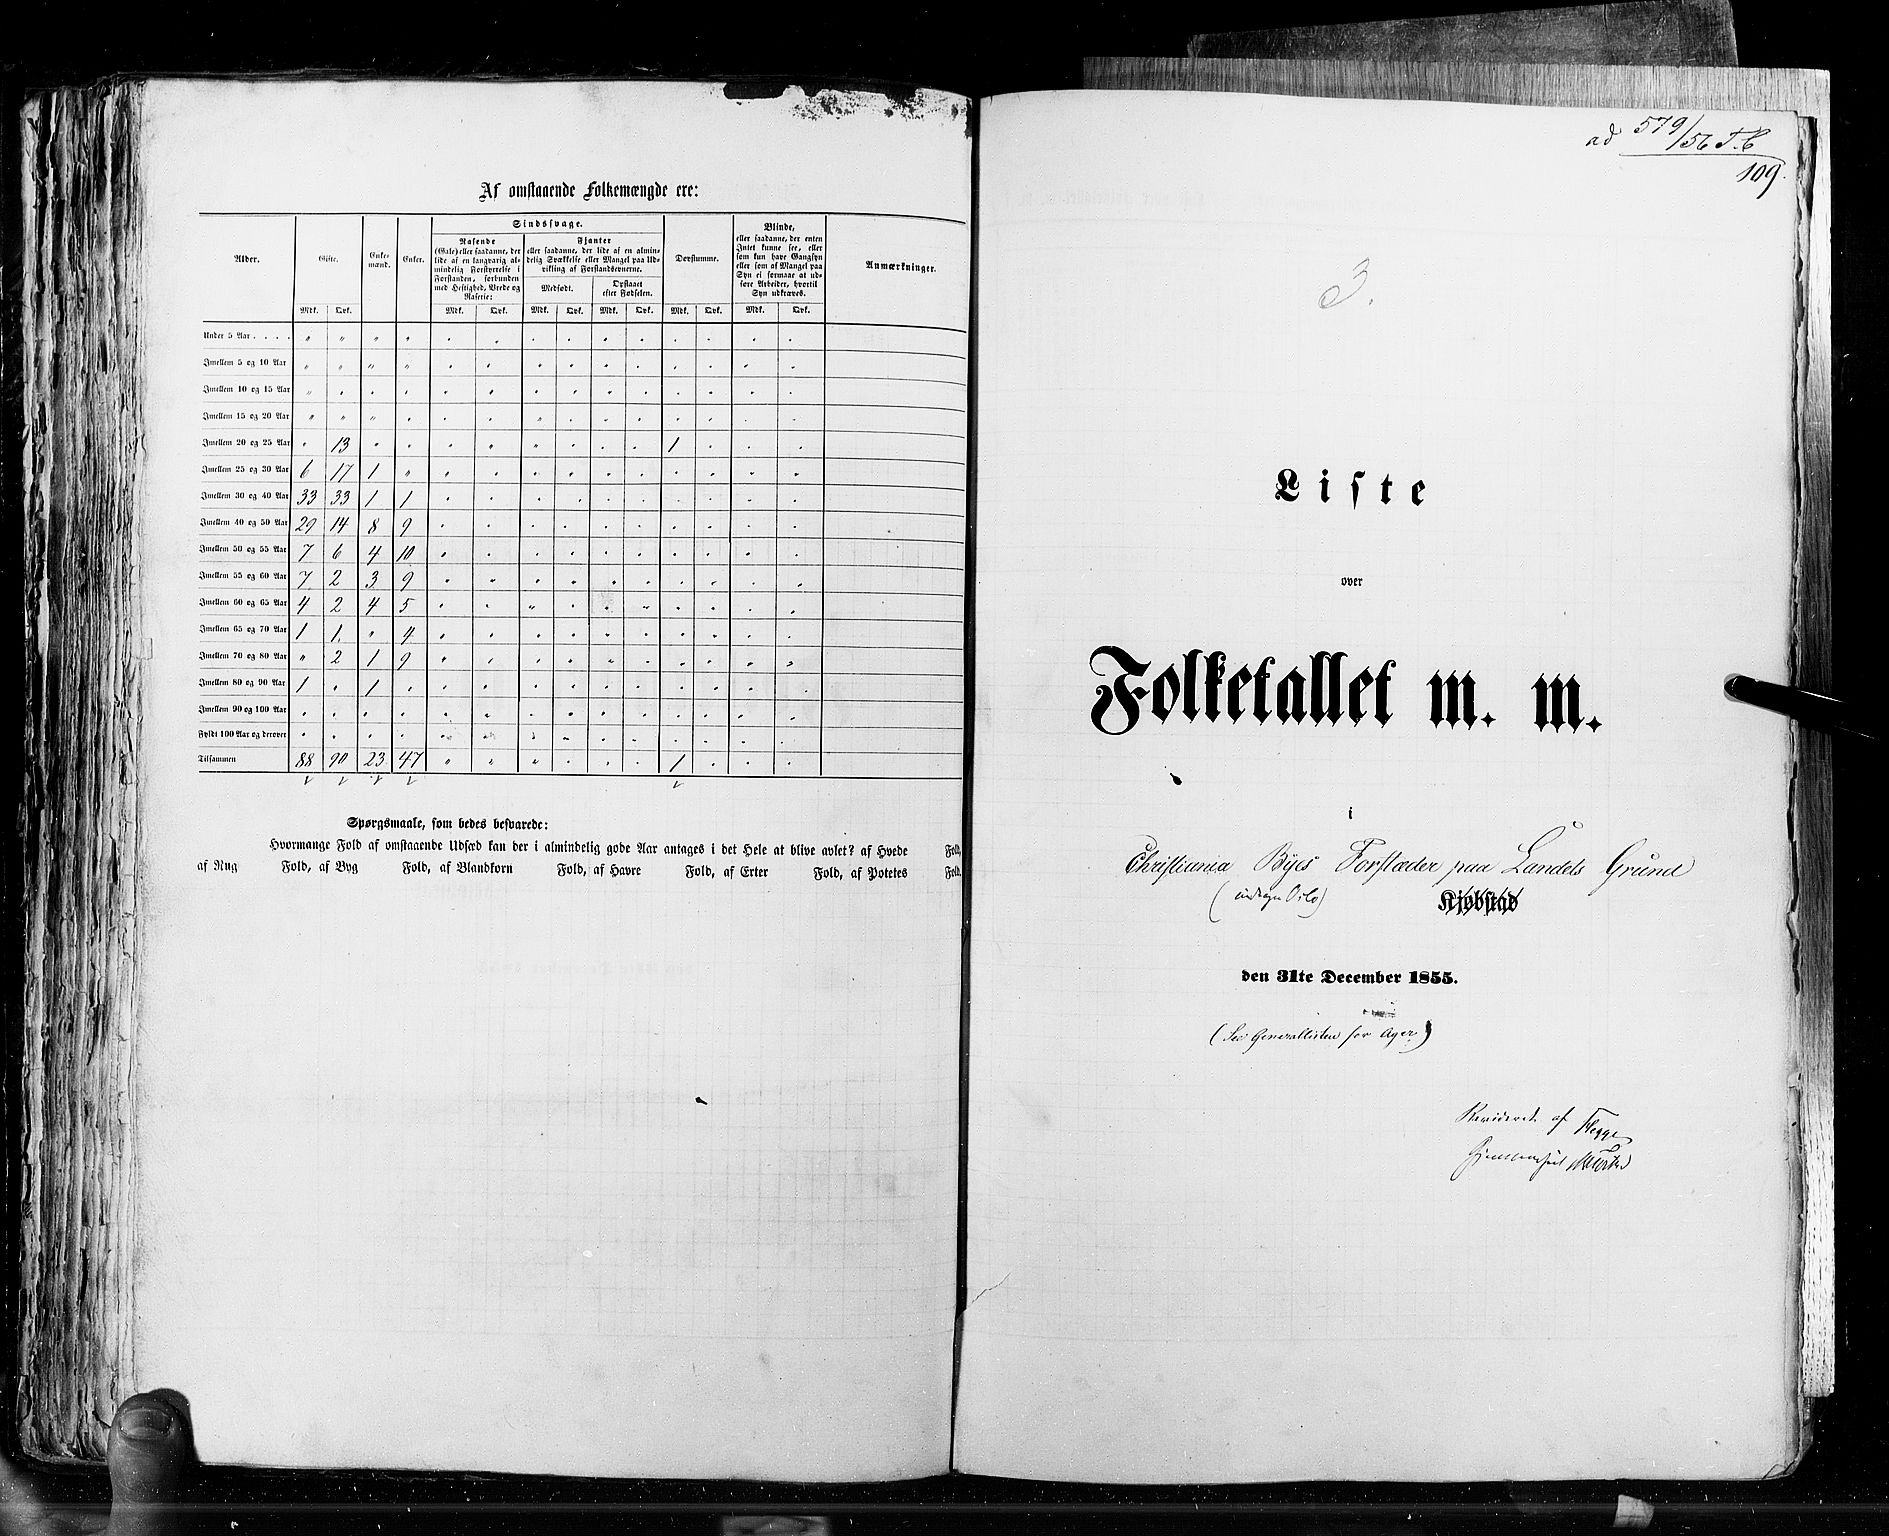 RA, Folketellingen 1855, bind 7: Kjøpsteder og ladesteder: Fredrikshald-Kragerø, 1855, s. 109